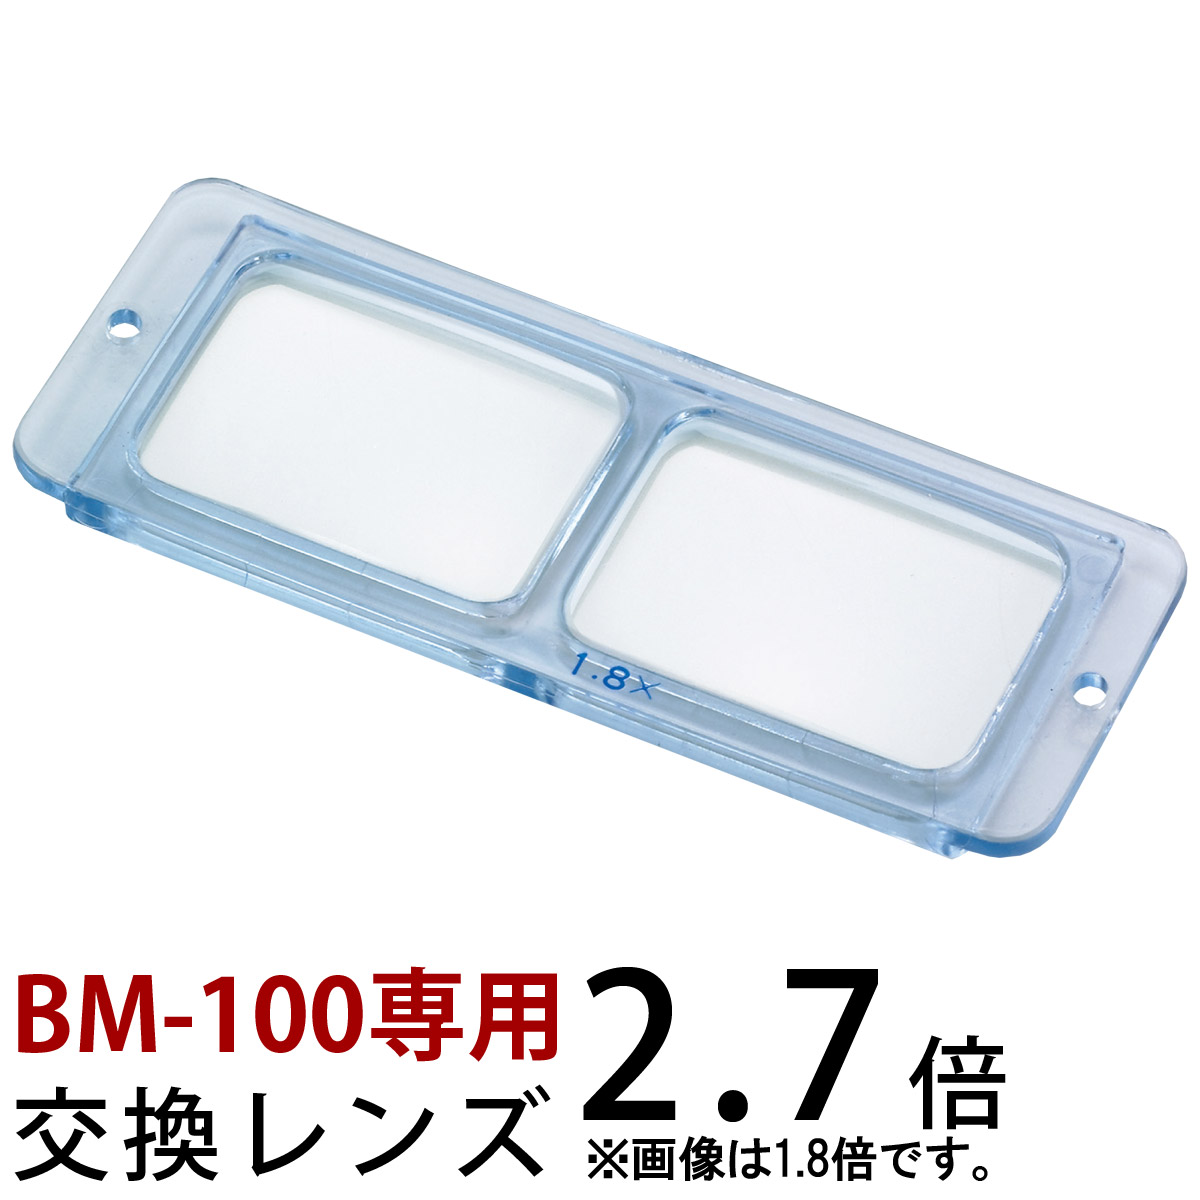 ヘッドルーペ 双眼 交換レンズ BM-100C1 2.7倍 BM-100 専用 池田レンズ